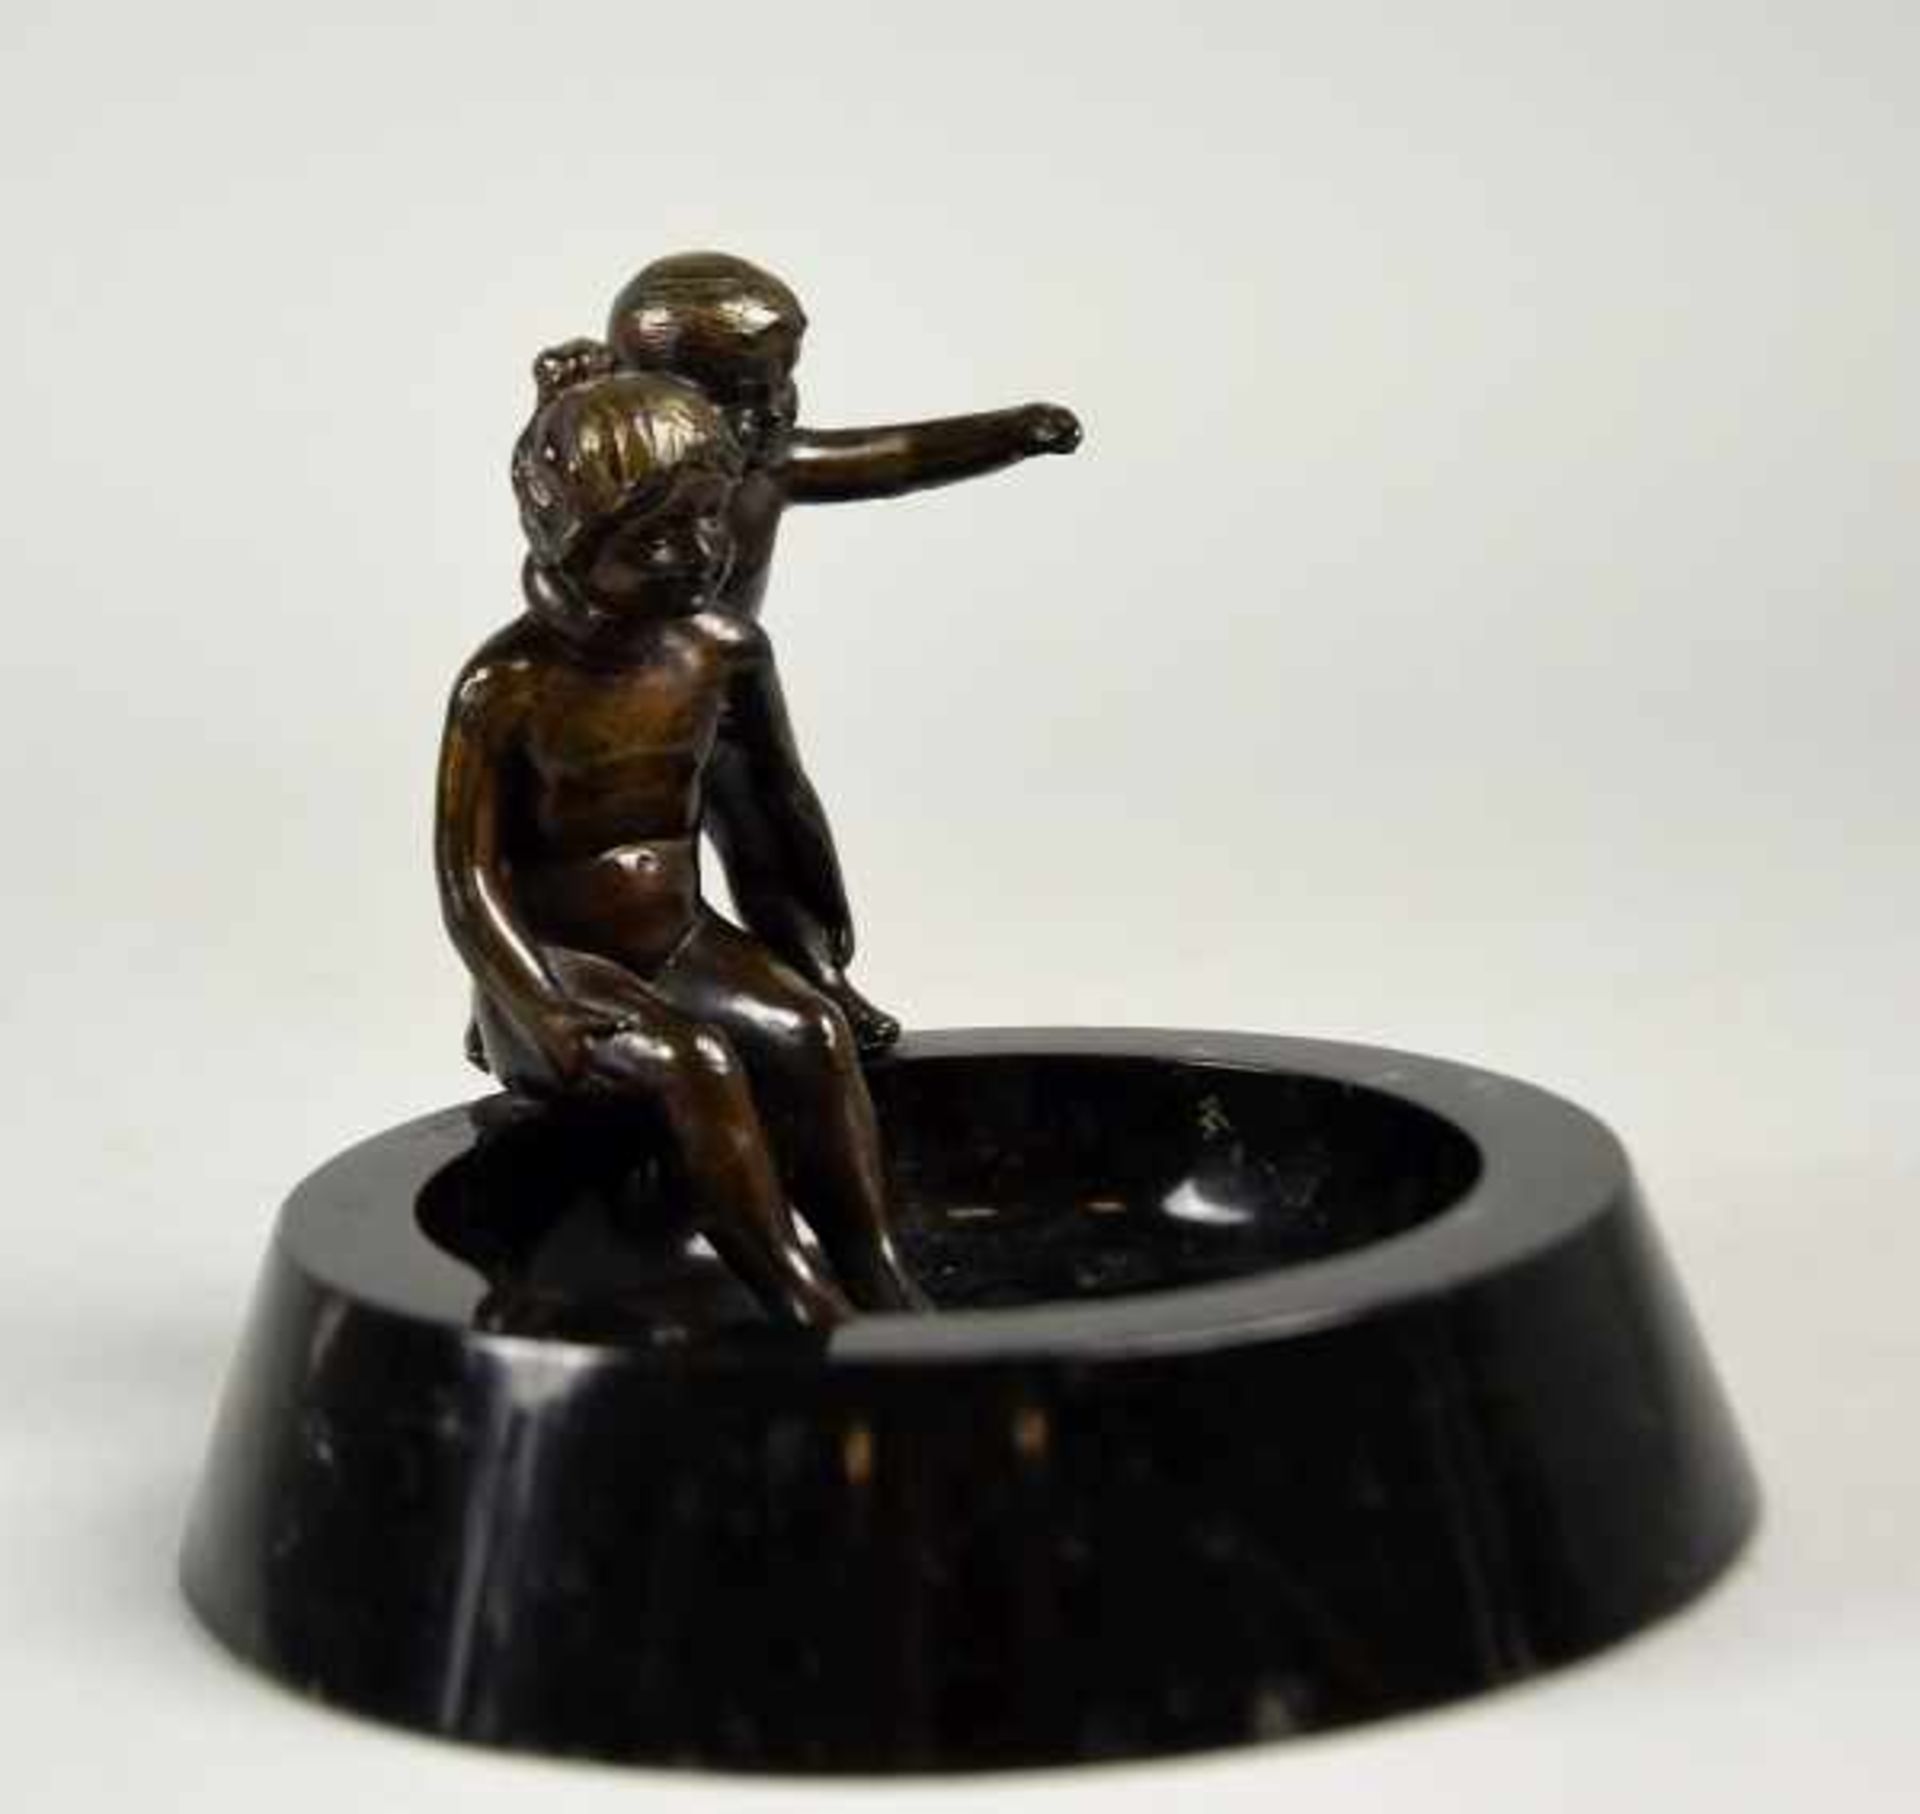 SCHALE "Junge und Mädchen" aus Bronze, auf schwarzem runden Marmoraschenbecher sitzend, H 11cm u. - Image 2 of 3